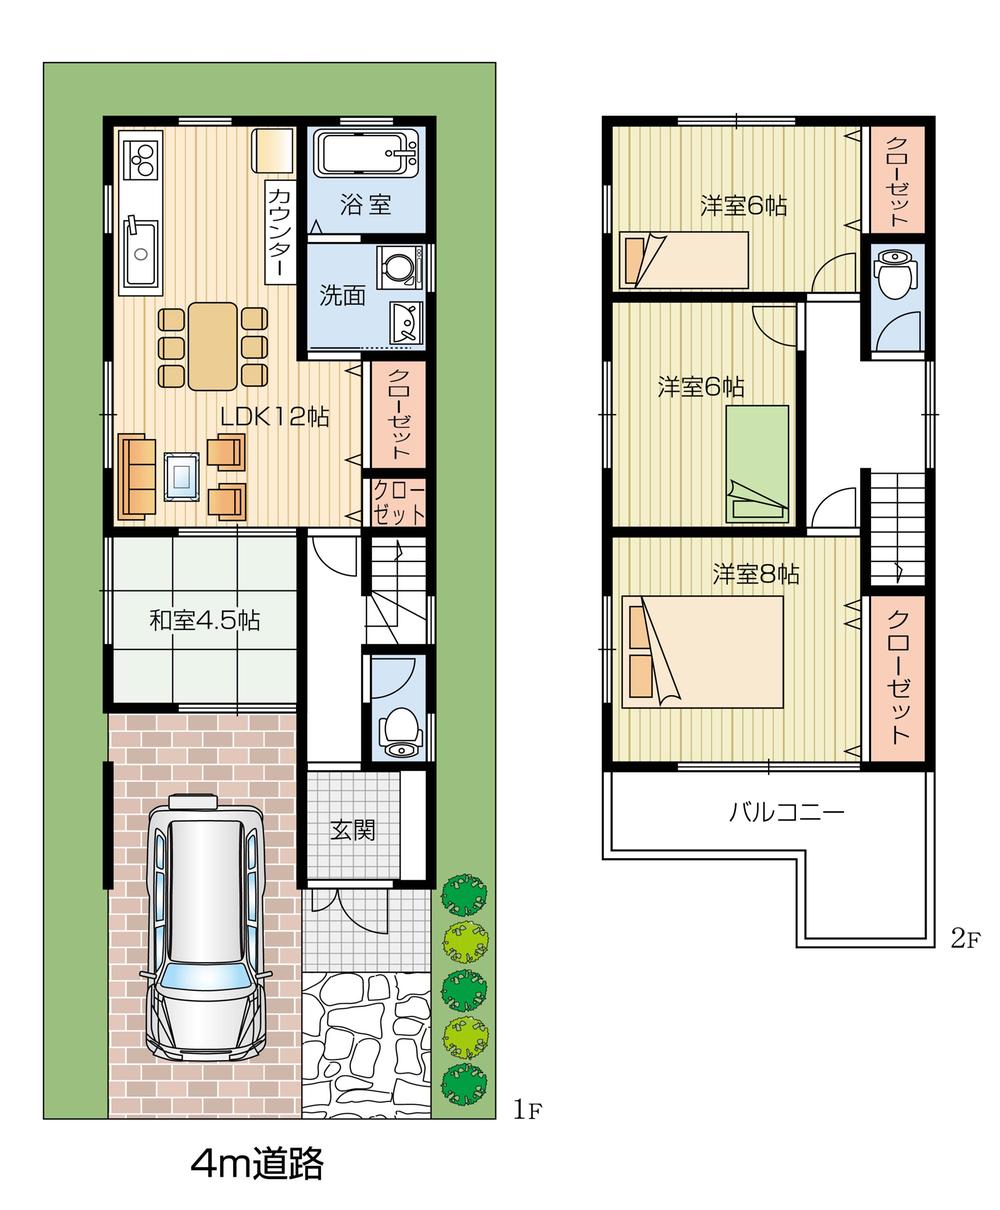 Floor plan. 28.8 million yen, 4LDK, Land area 79.49 sq m , Building area 89.91 sq m